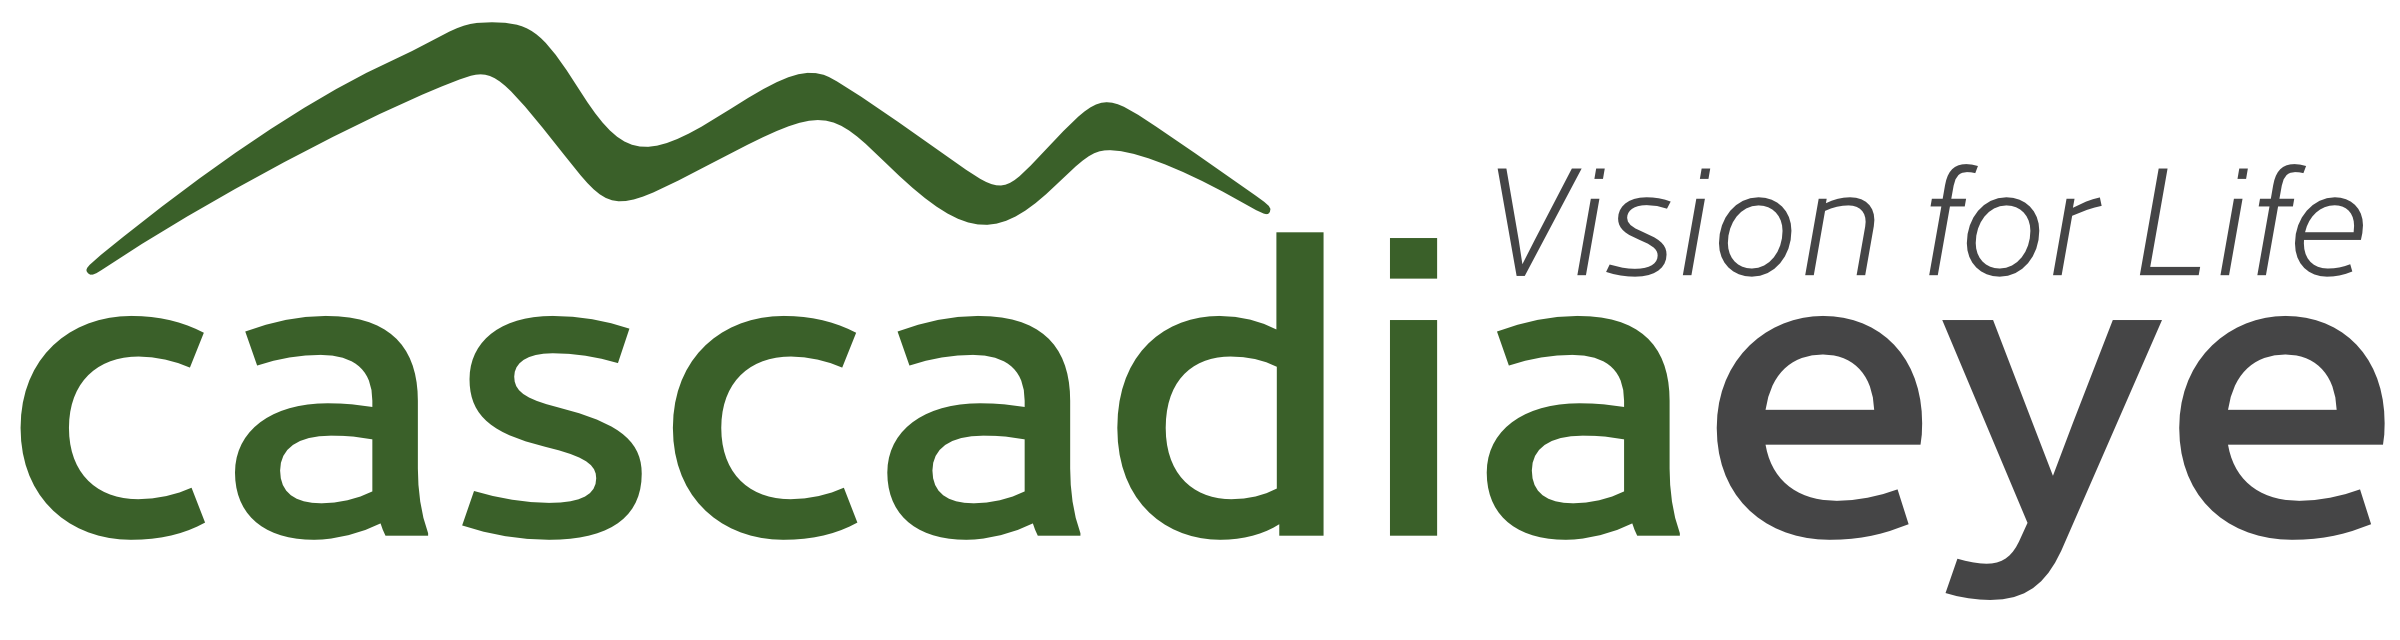 Cascadia Eye logo